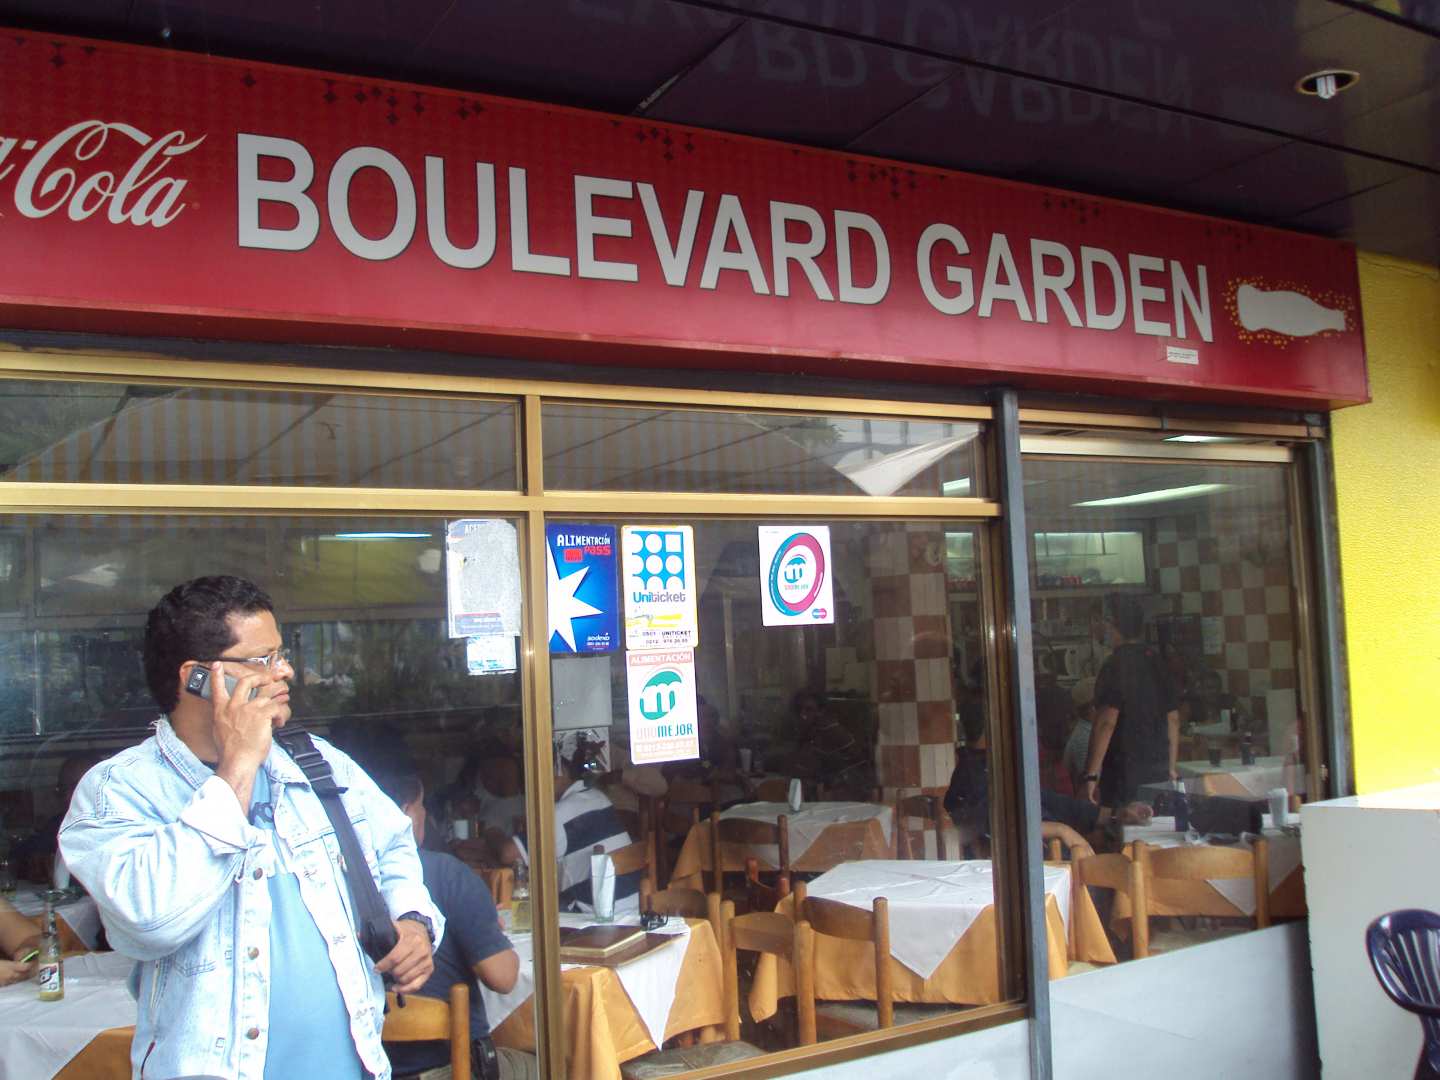 Boulevard Garden